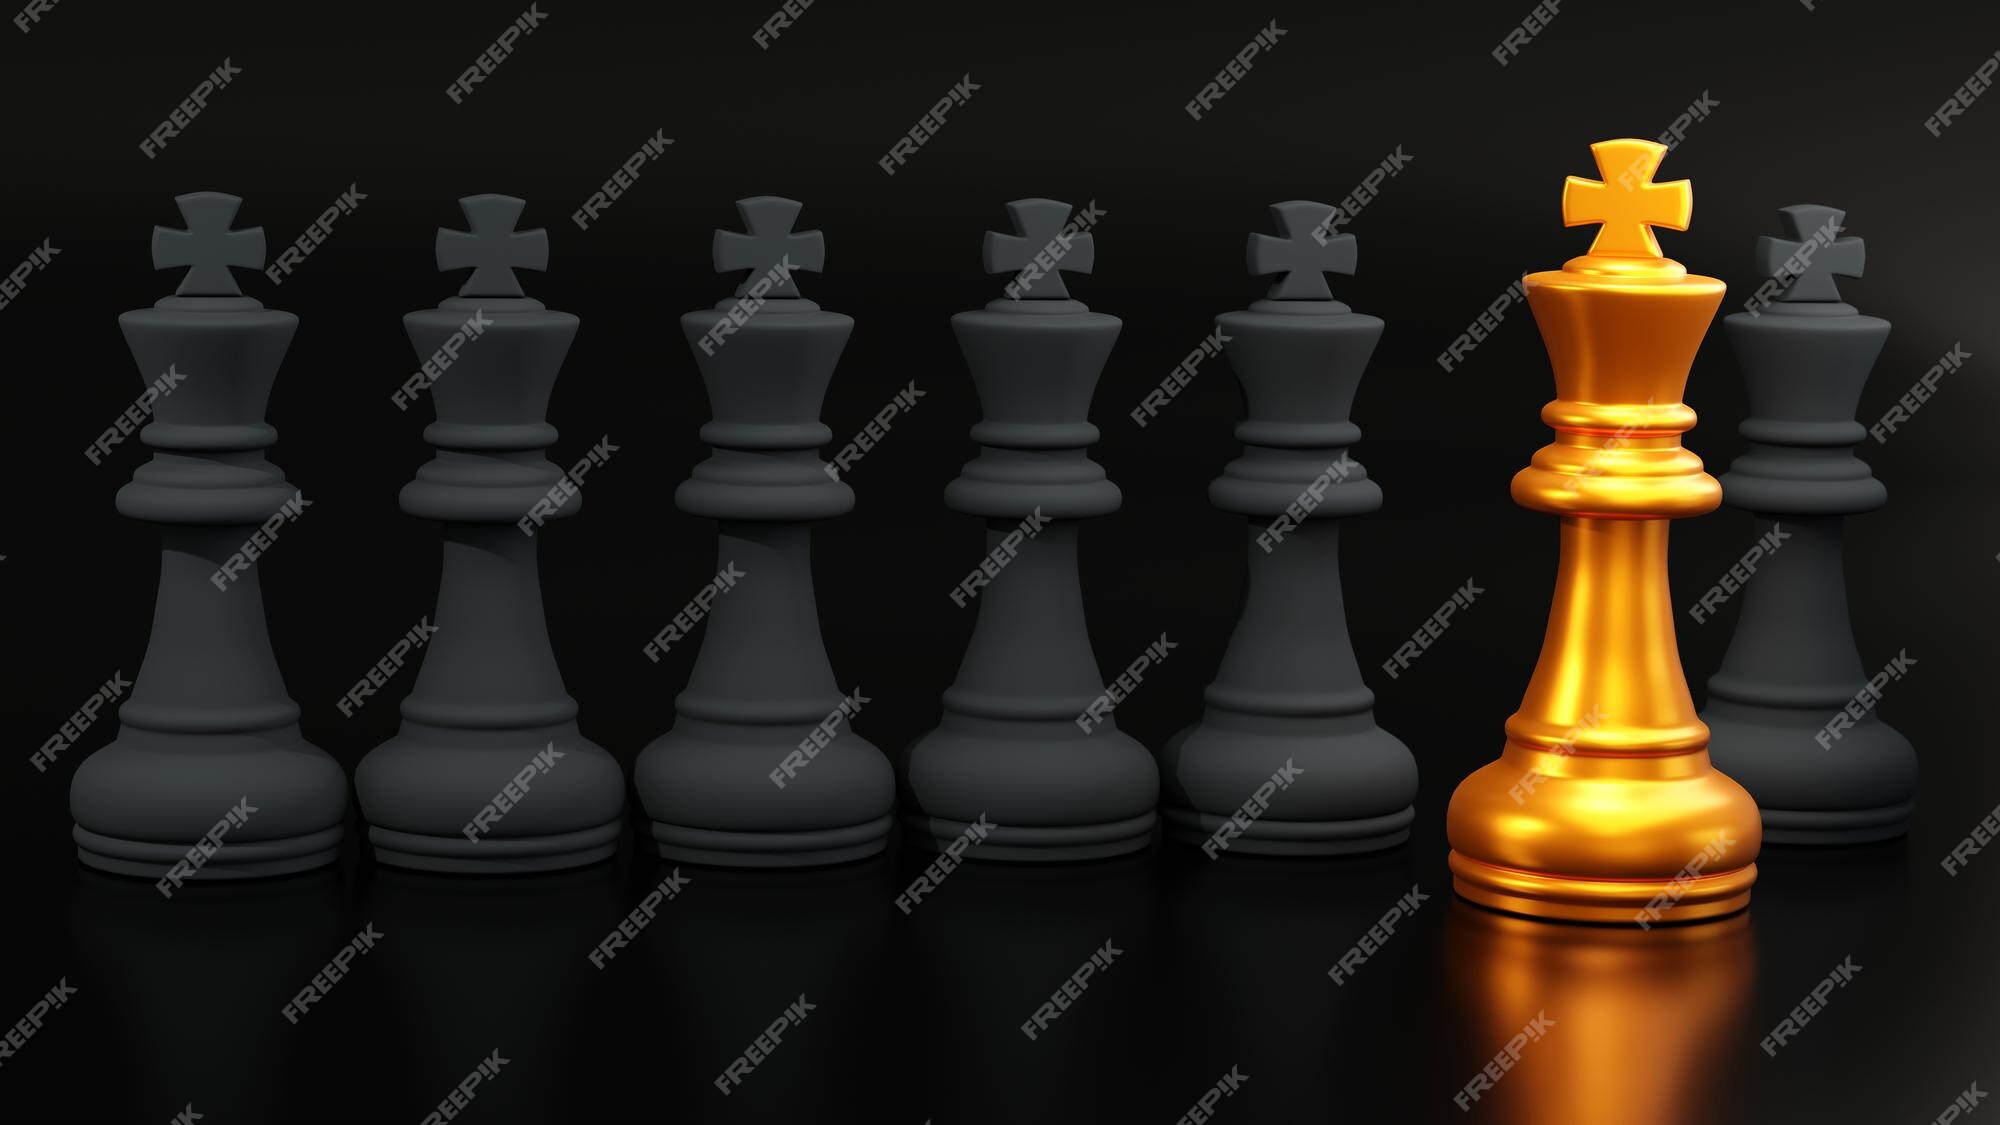 Posição ereta do rei de xadrez roxo de frente para a ilustração 3d do sol